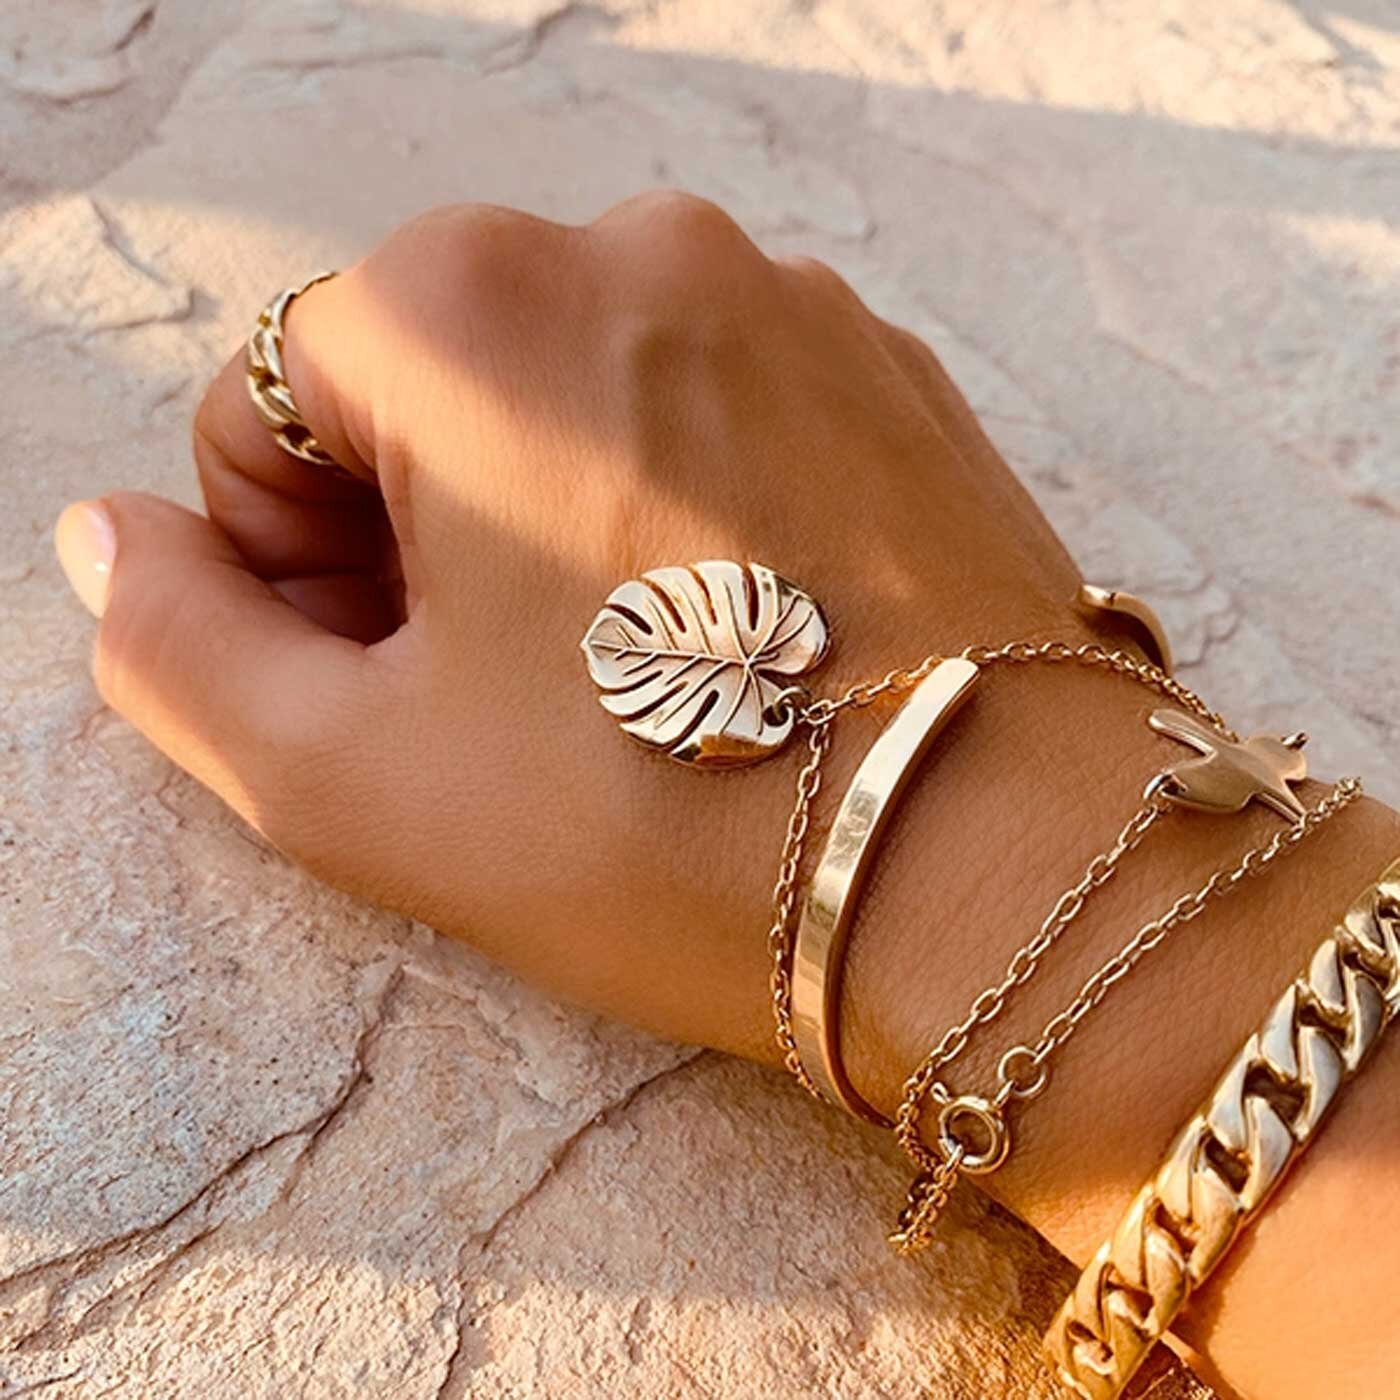 Palm Leaf bracelet gold